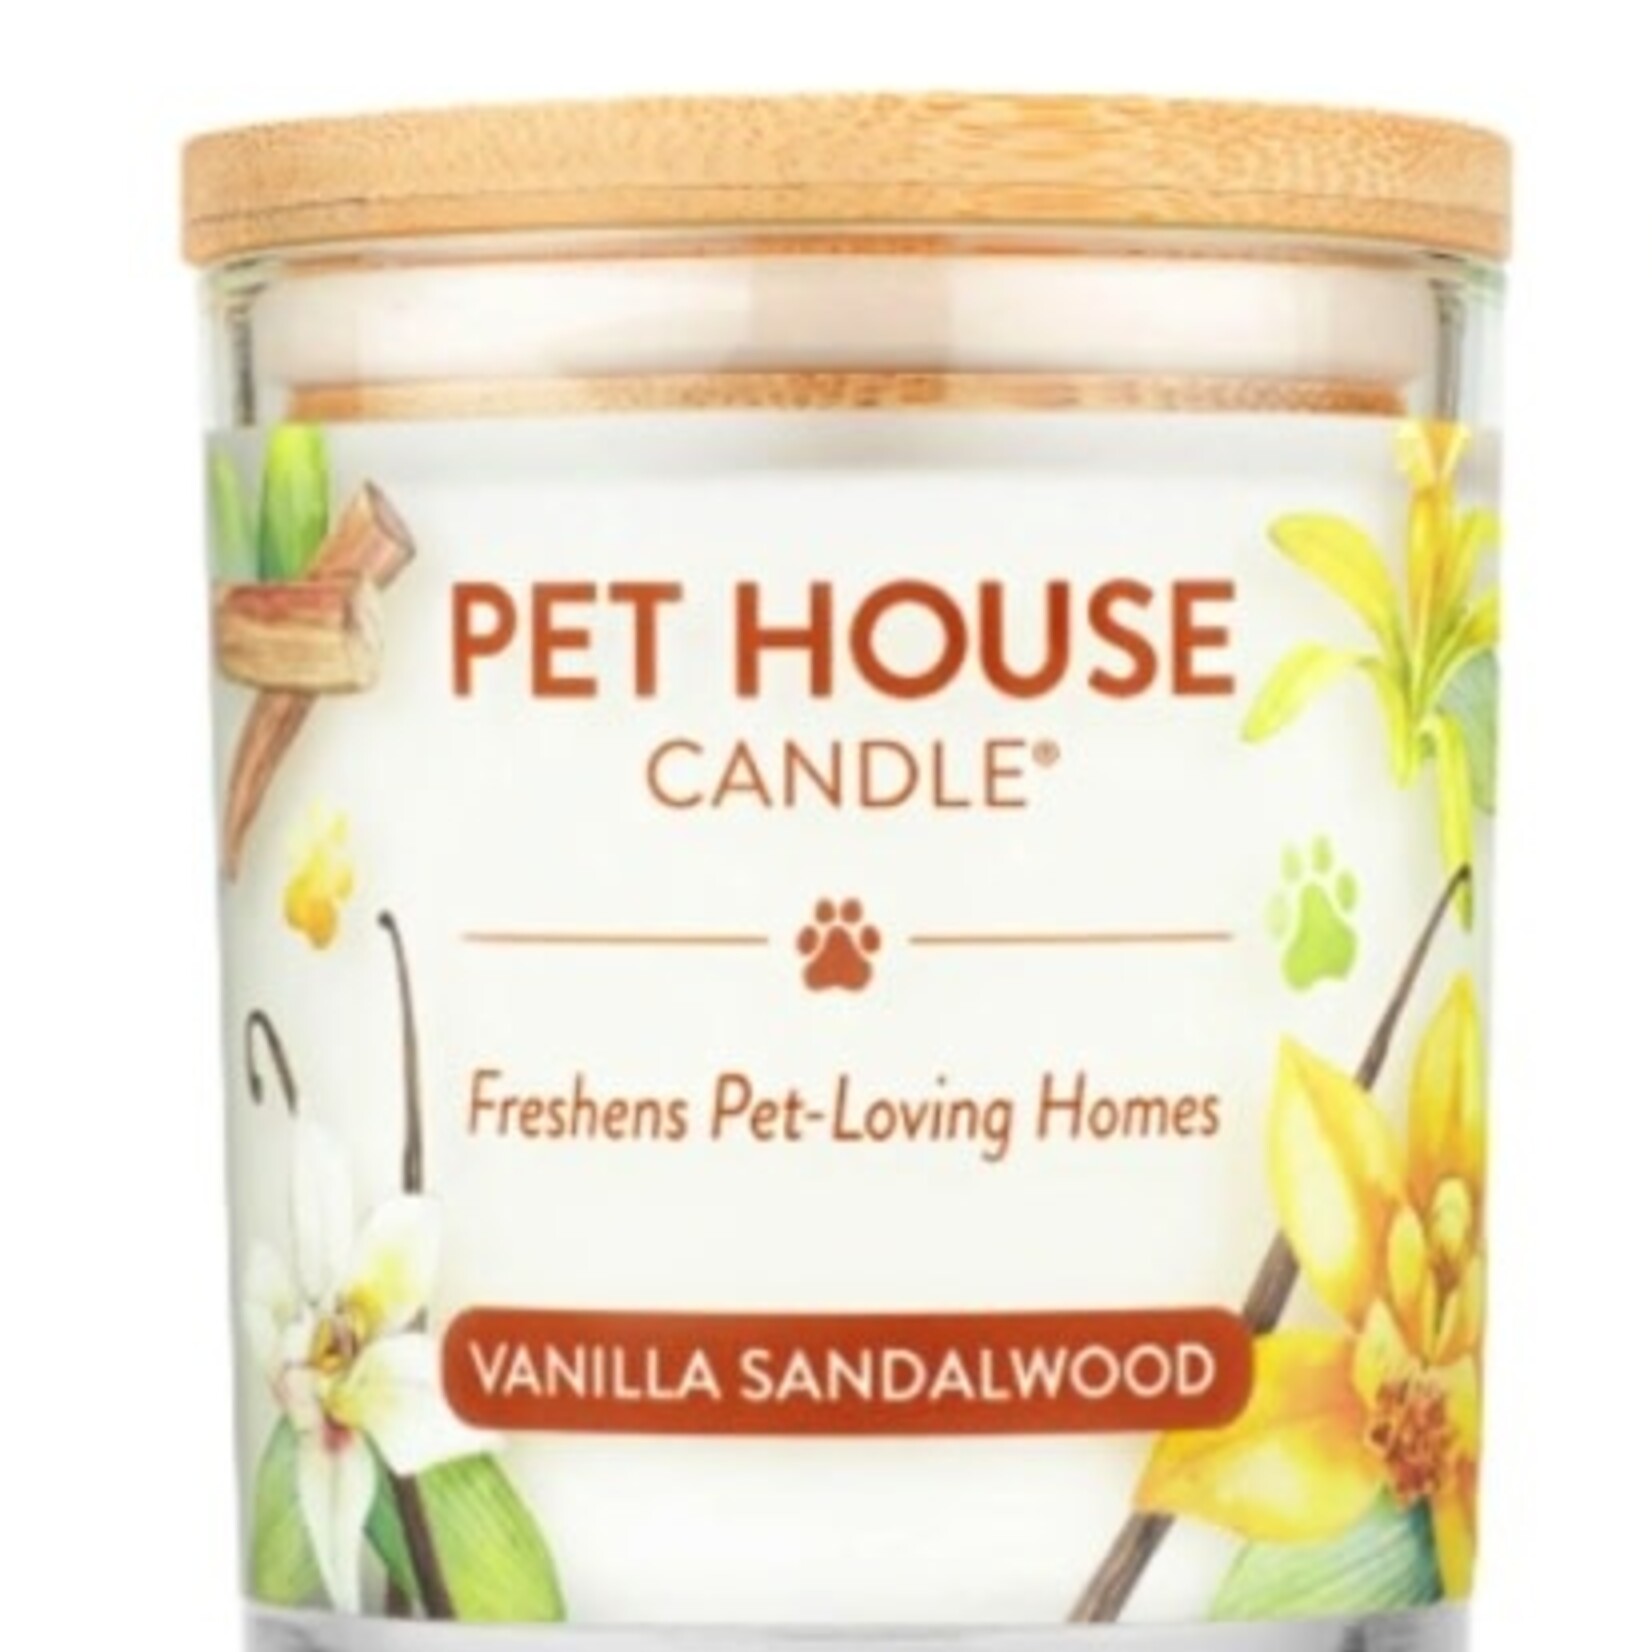 PET HOUSE CANDLE Pet House Candle Vanilla Sandalwood